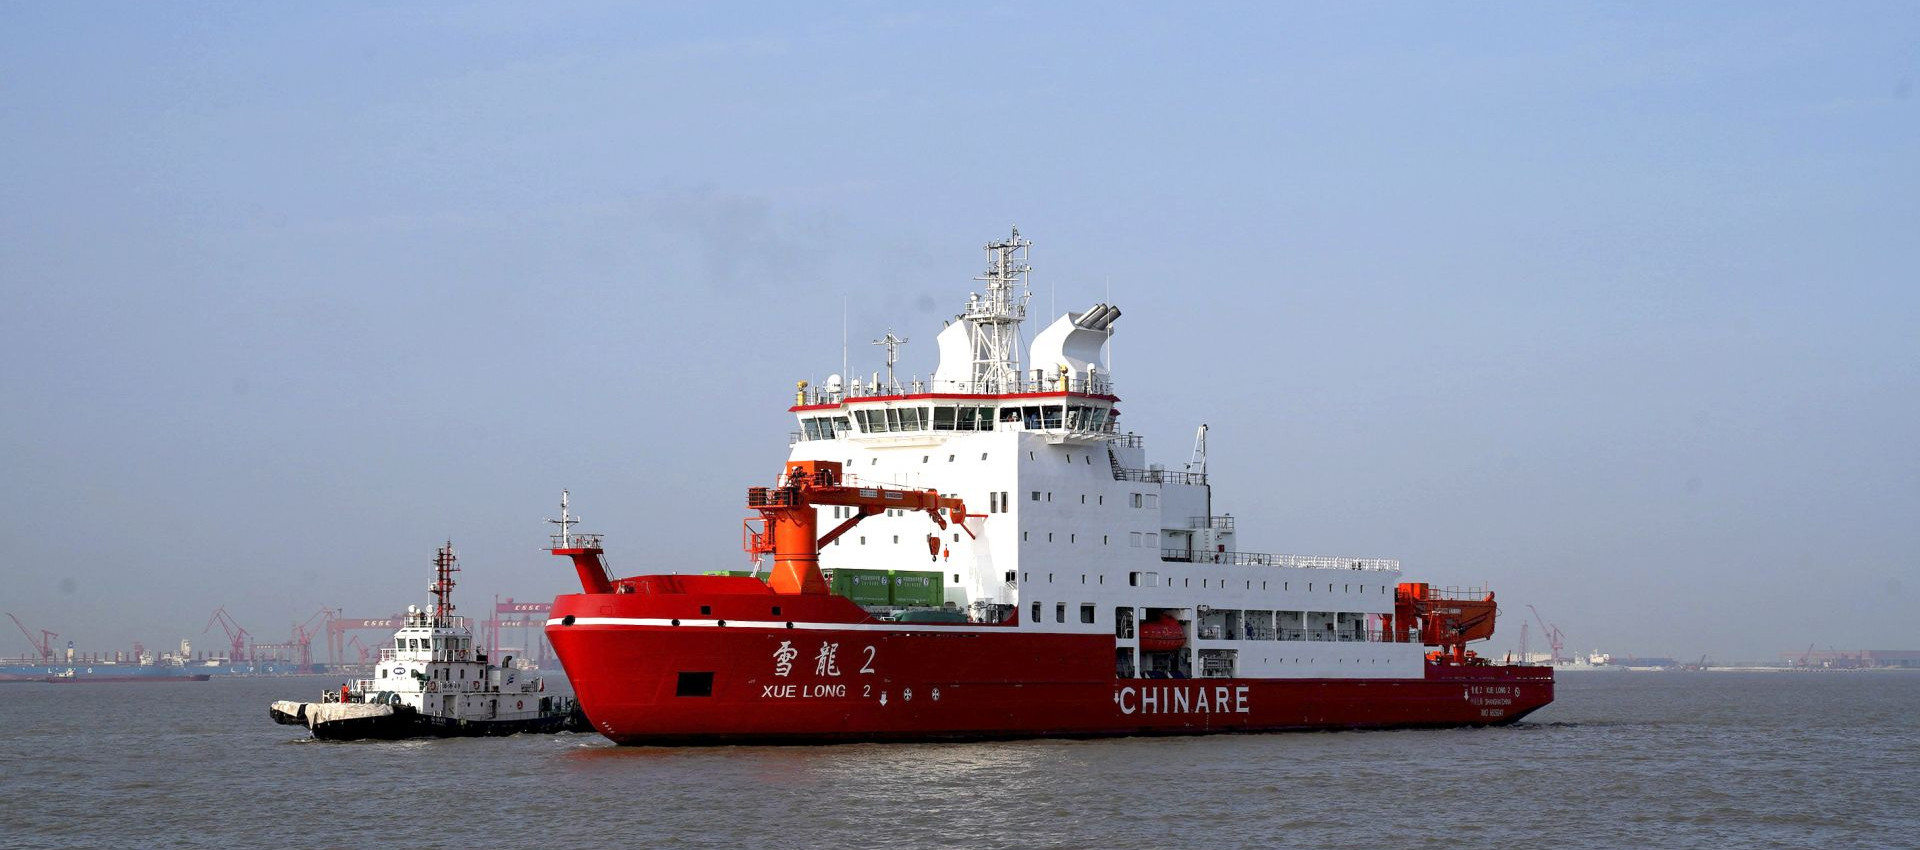 τελευταία εταιρεία περί Το καλώδιο συγκόλλησης Longteng χρησιμοποιήθηκε στο πολικό σκάφος αποστολής Xuelong